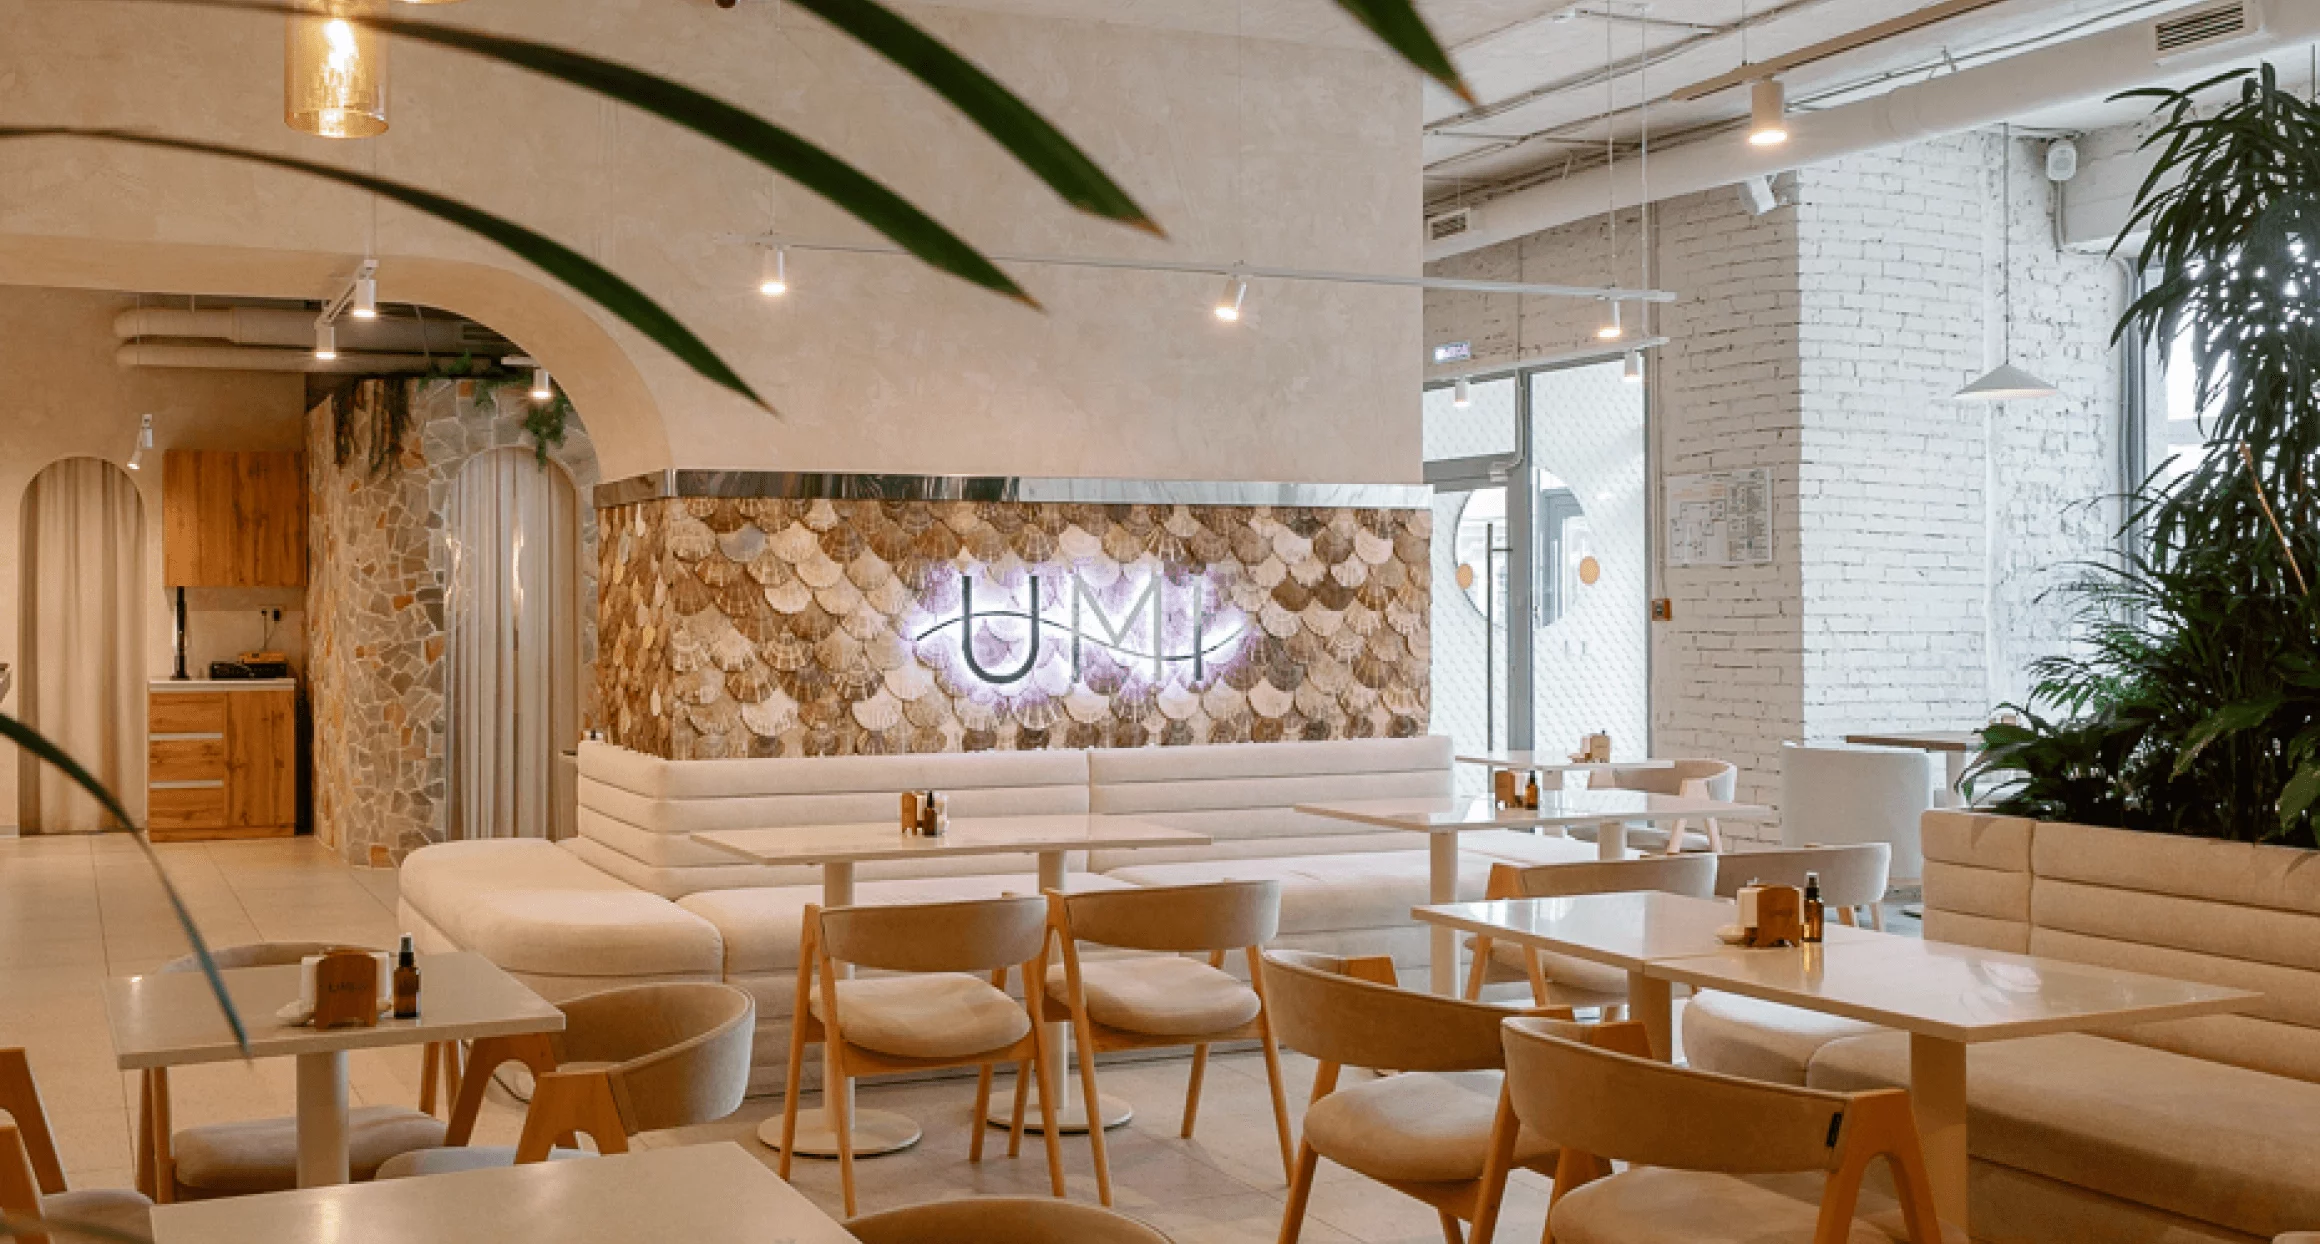 UMI - кафе азиатской кухни